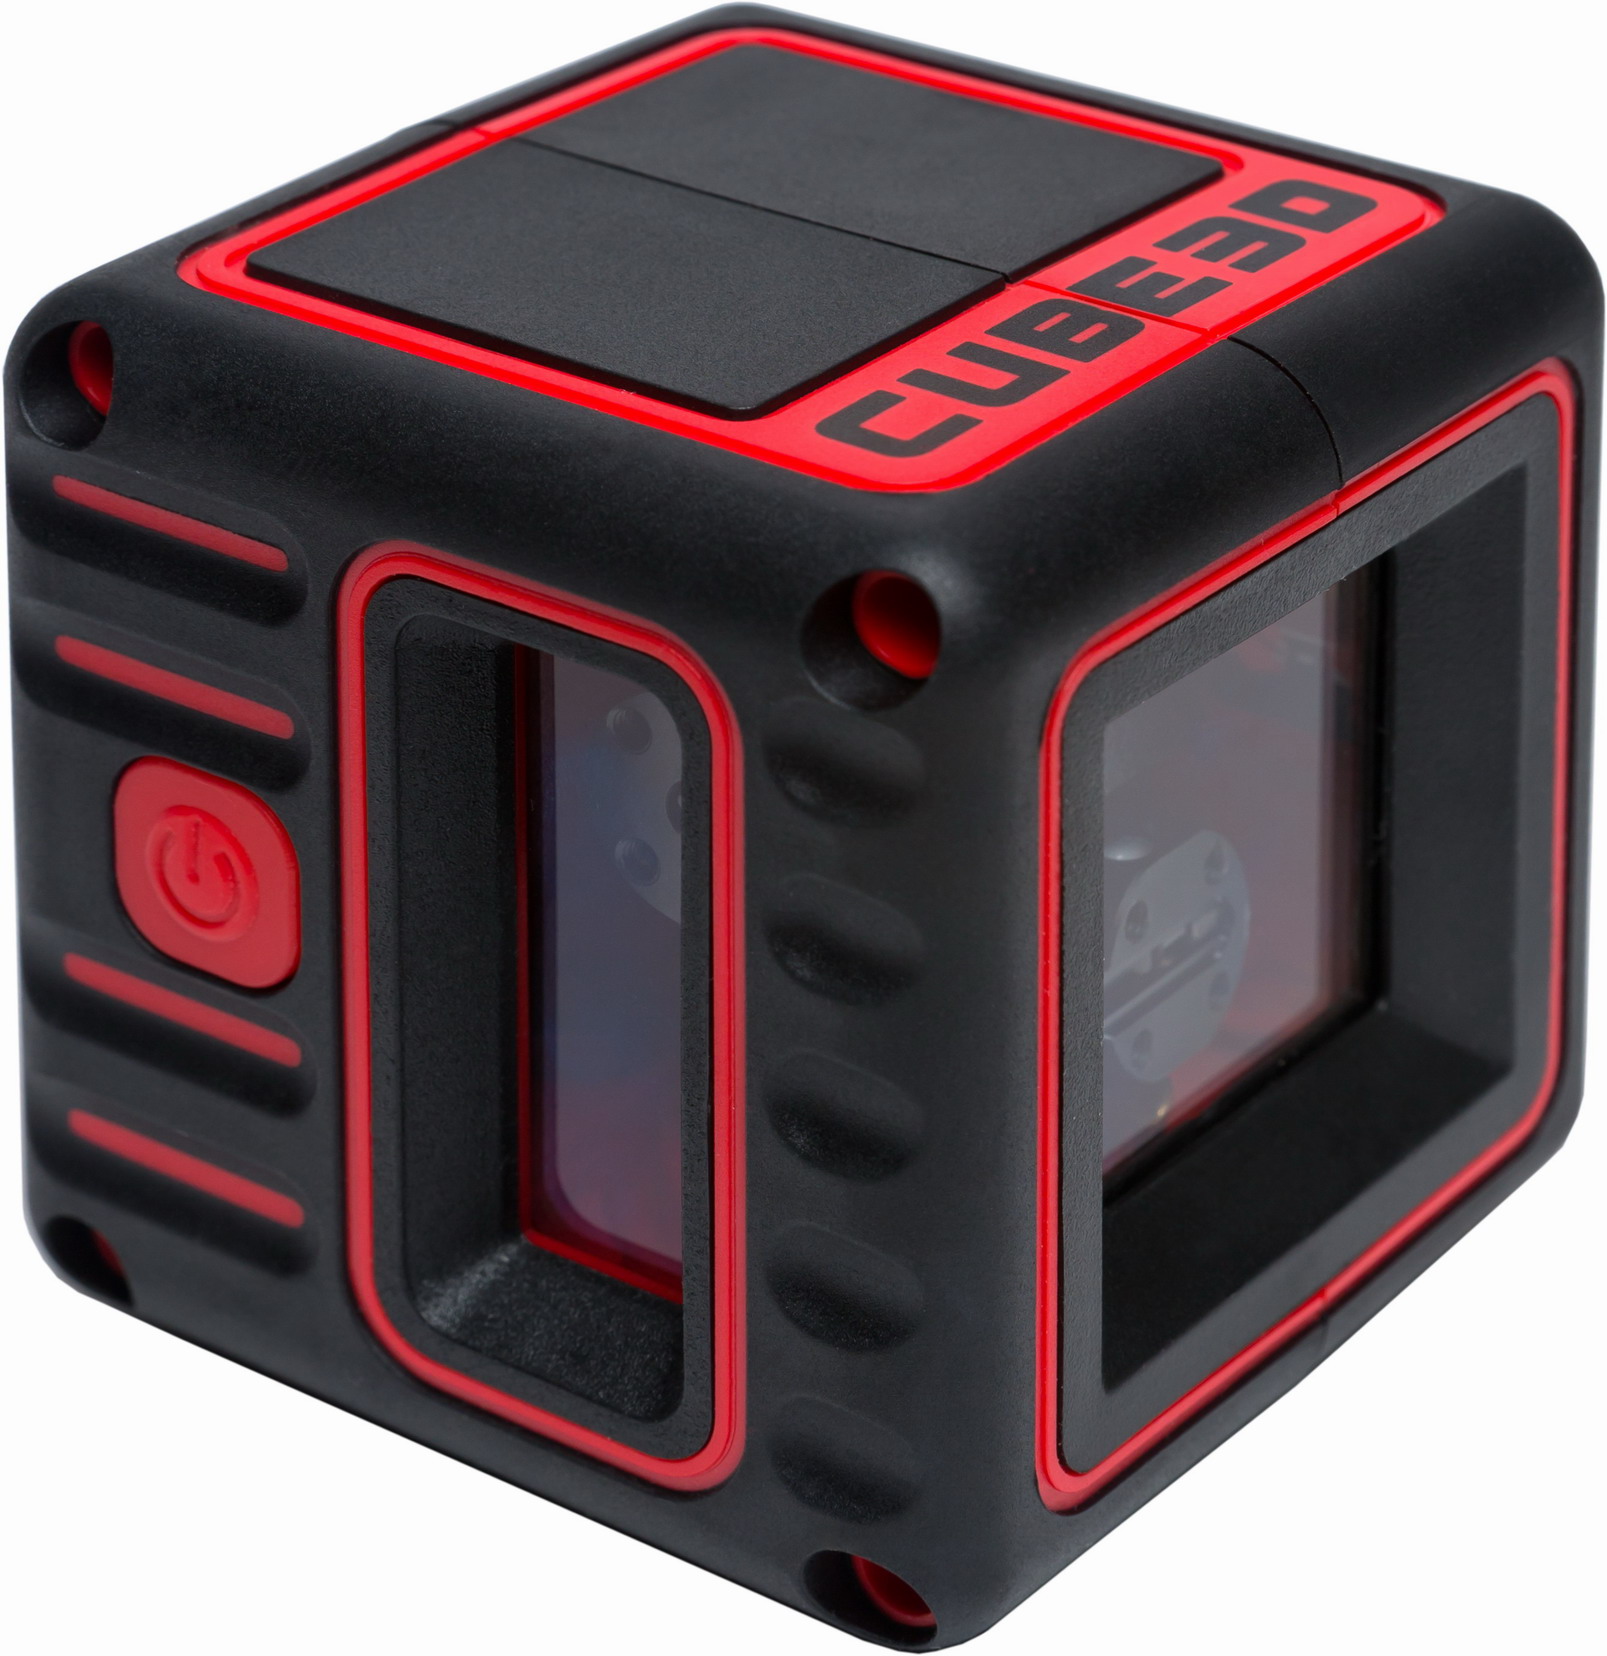 Laser Level Selbstnivellierung Kreuz Linie 3 Messen Handheld Tragbar Ada Cube 3D 